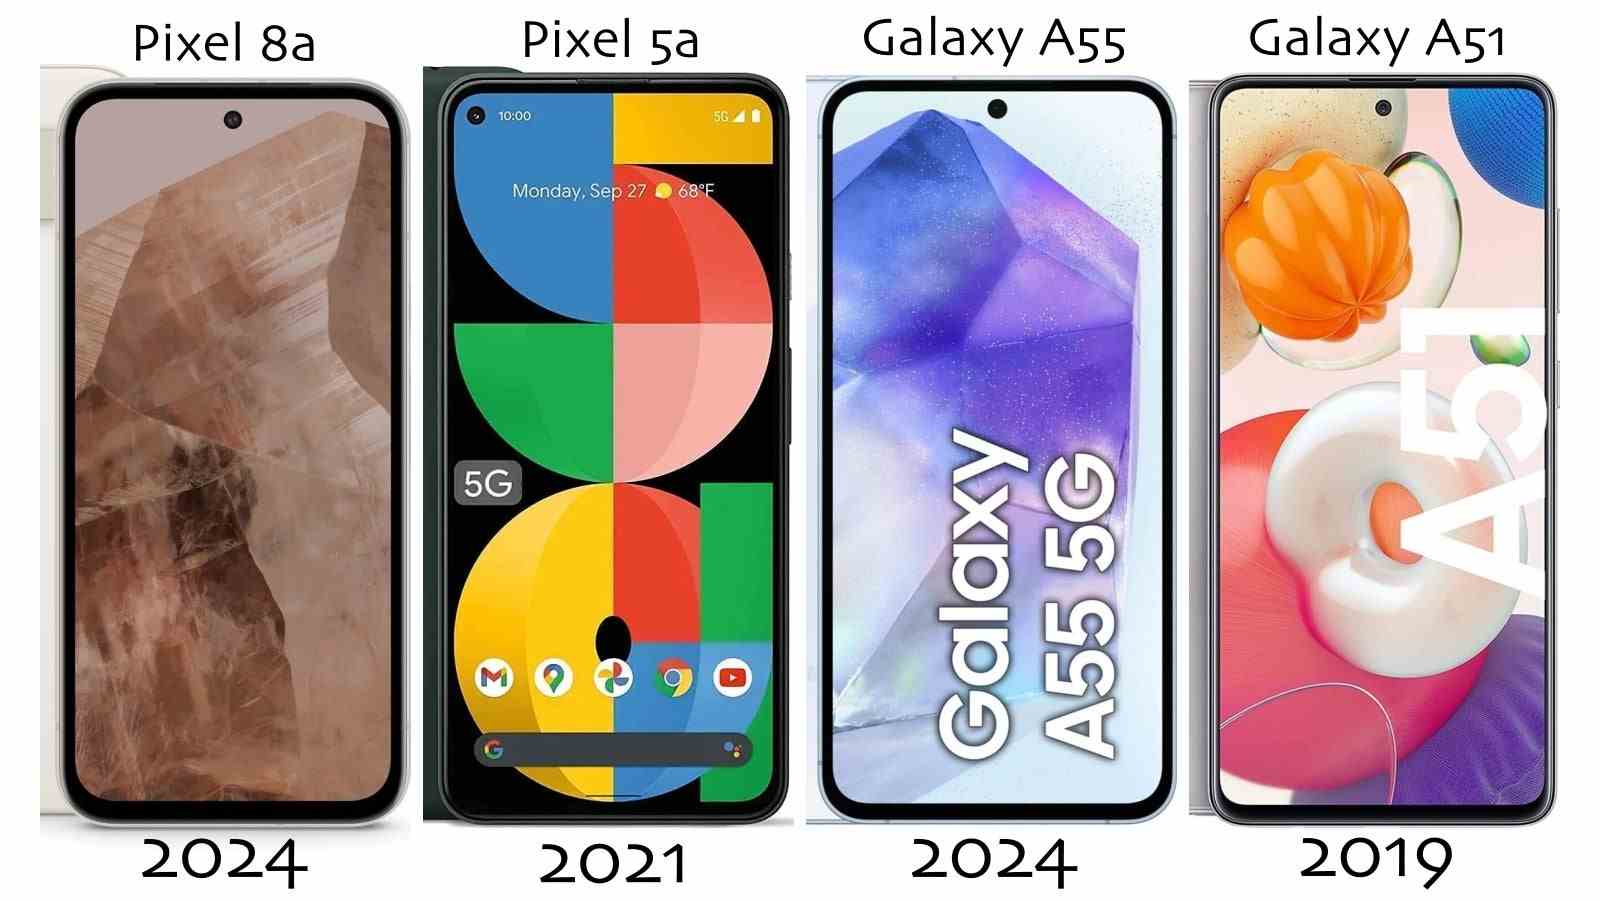 Görünüşe göre Samsung ve Google, amiral gemilerinin daha iyi görünmesi için orta sınıf telefonlarının tasarımını düşürmeye devam ediyor.  - Pek iyi bir görünüm değil!  Google ve Samsung, daha fazla amiral gemisi satmak için yeni telefonları eski mi gösteriyor?